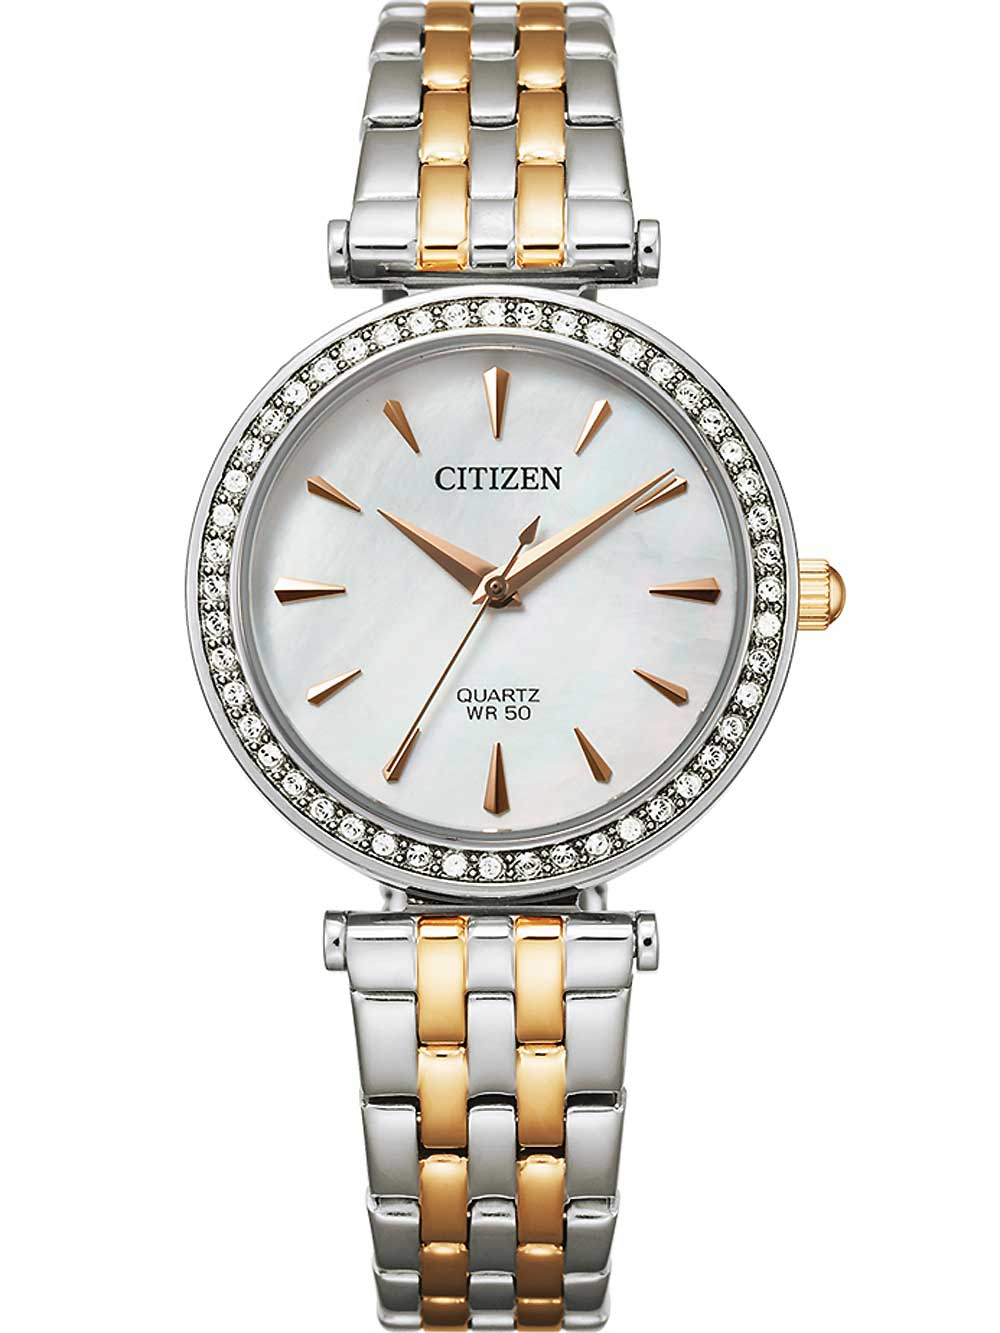 Citizen ER0216 59D Elegance Damenuhr Quarz 30mm 5ATM  - Onlineshop Timeshop24